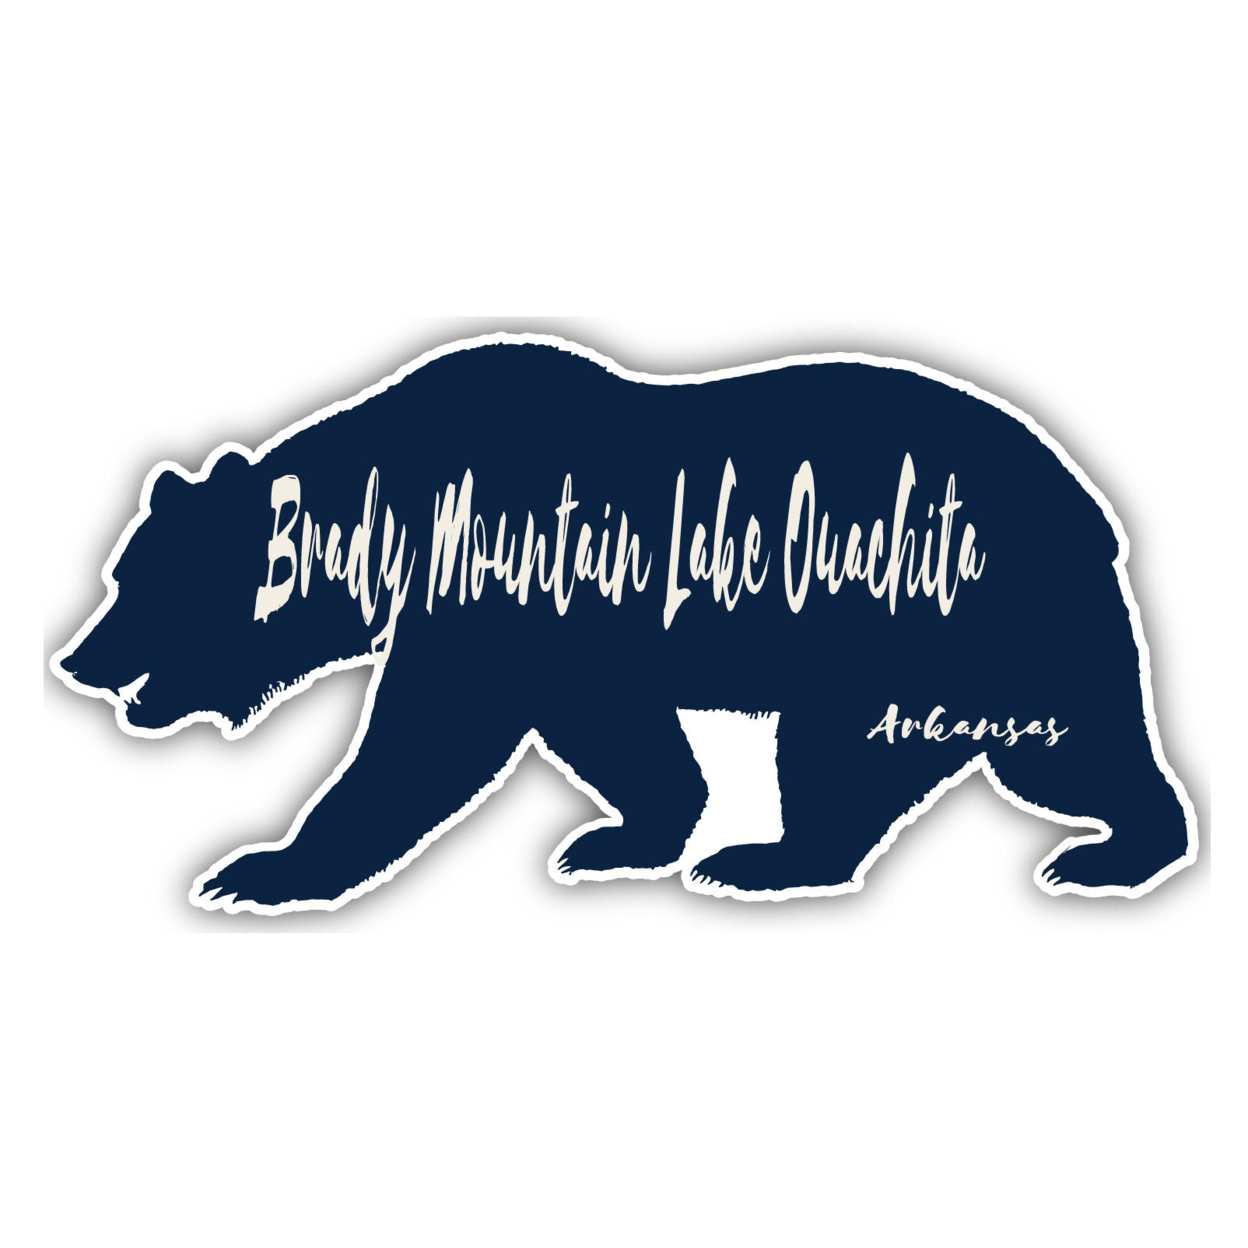 Brady Mountain Lake Ouachita Arkansas Souvenir Decorative Stickers (Choose Theme And Size) - 4-Pack, 6-Inch, Bear